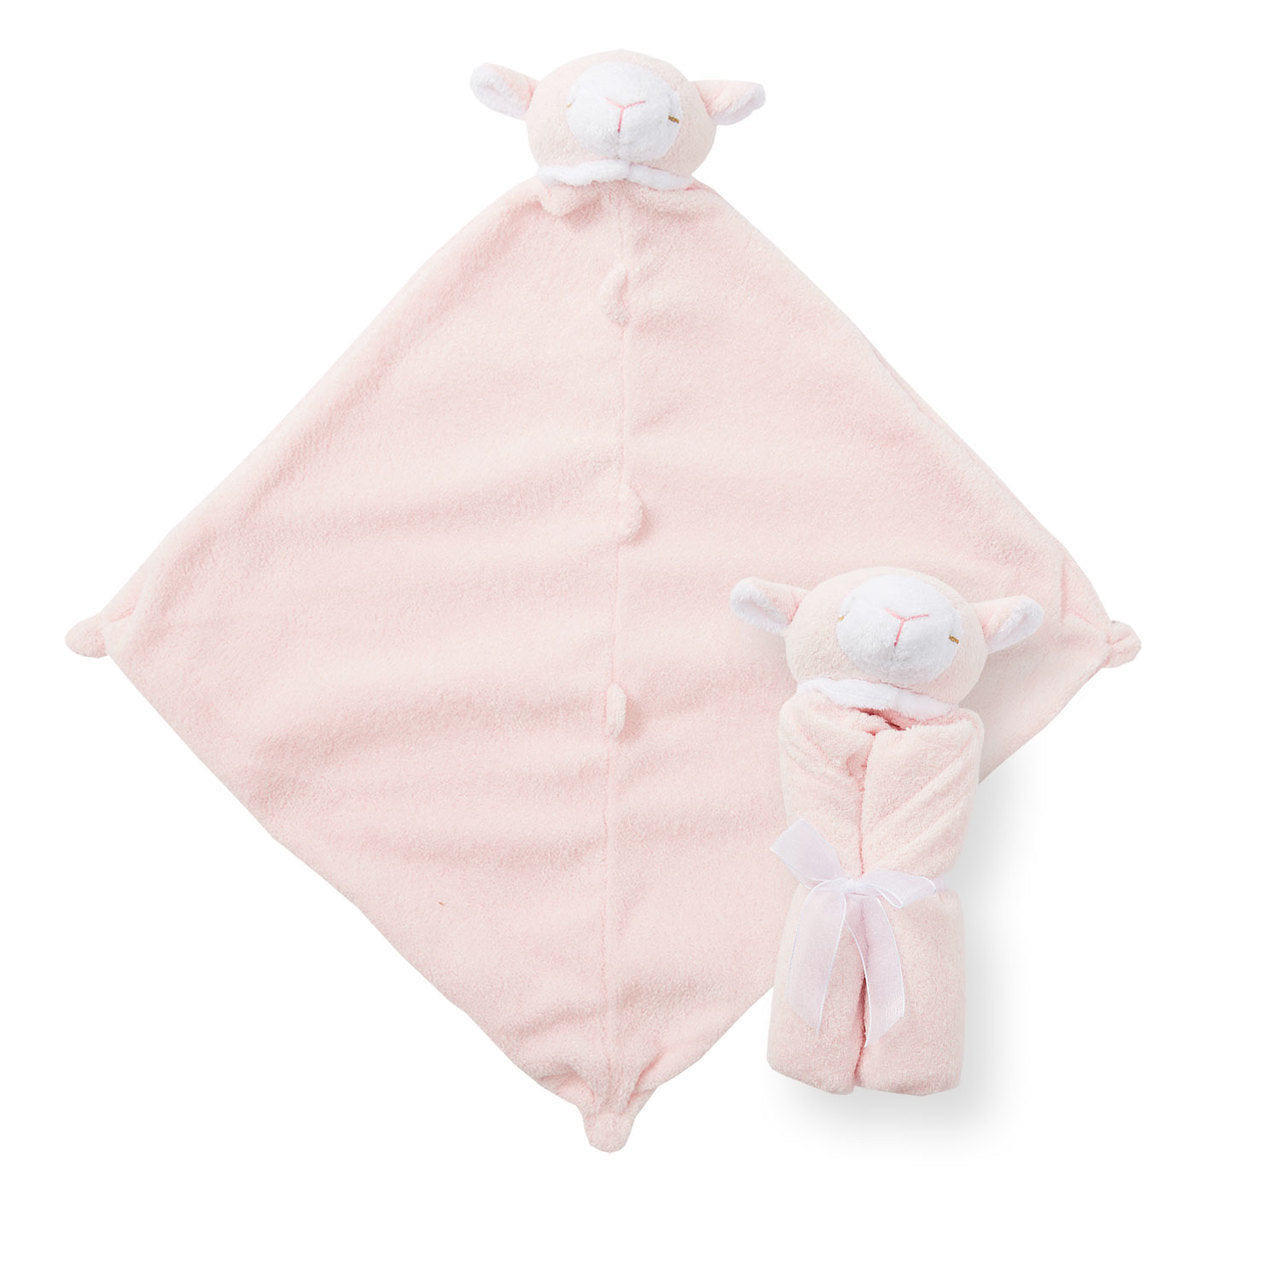 Cuddle Twins - Lamb Pink